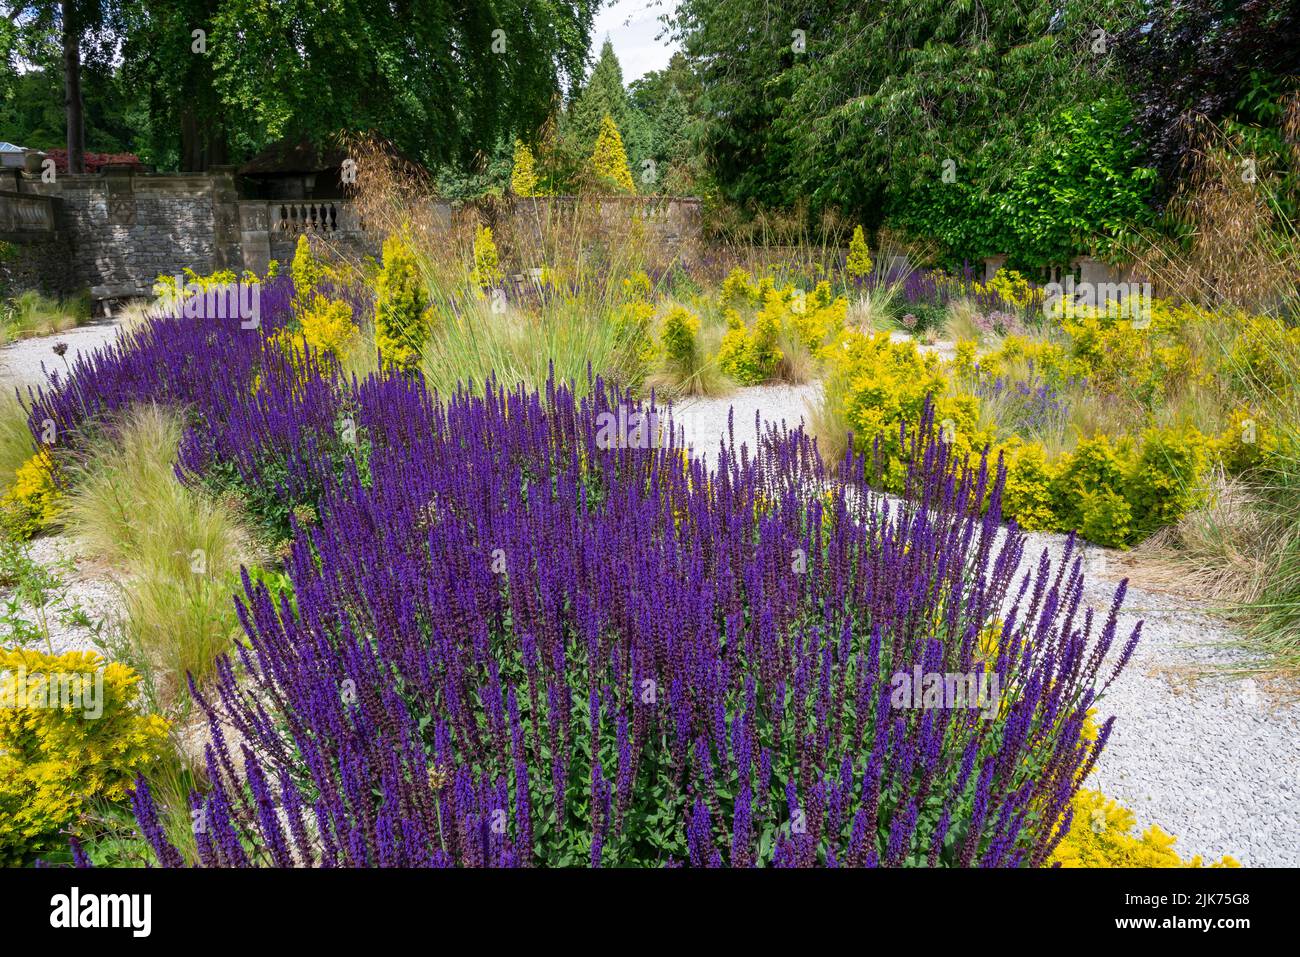 Jardin de gravier sec dans les jardins de Thornbridge Hall près de Bakewell, Peak District, Derbyshire, Angleterre. Banque D'Images